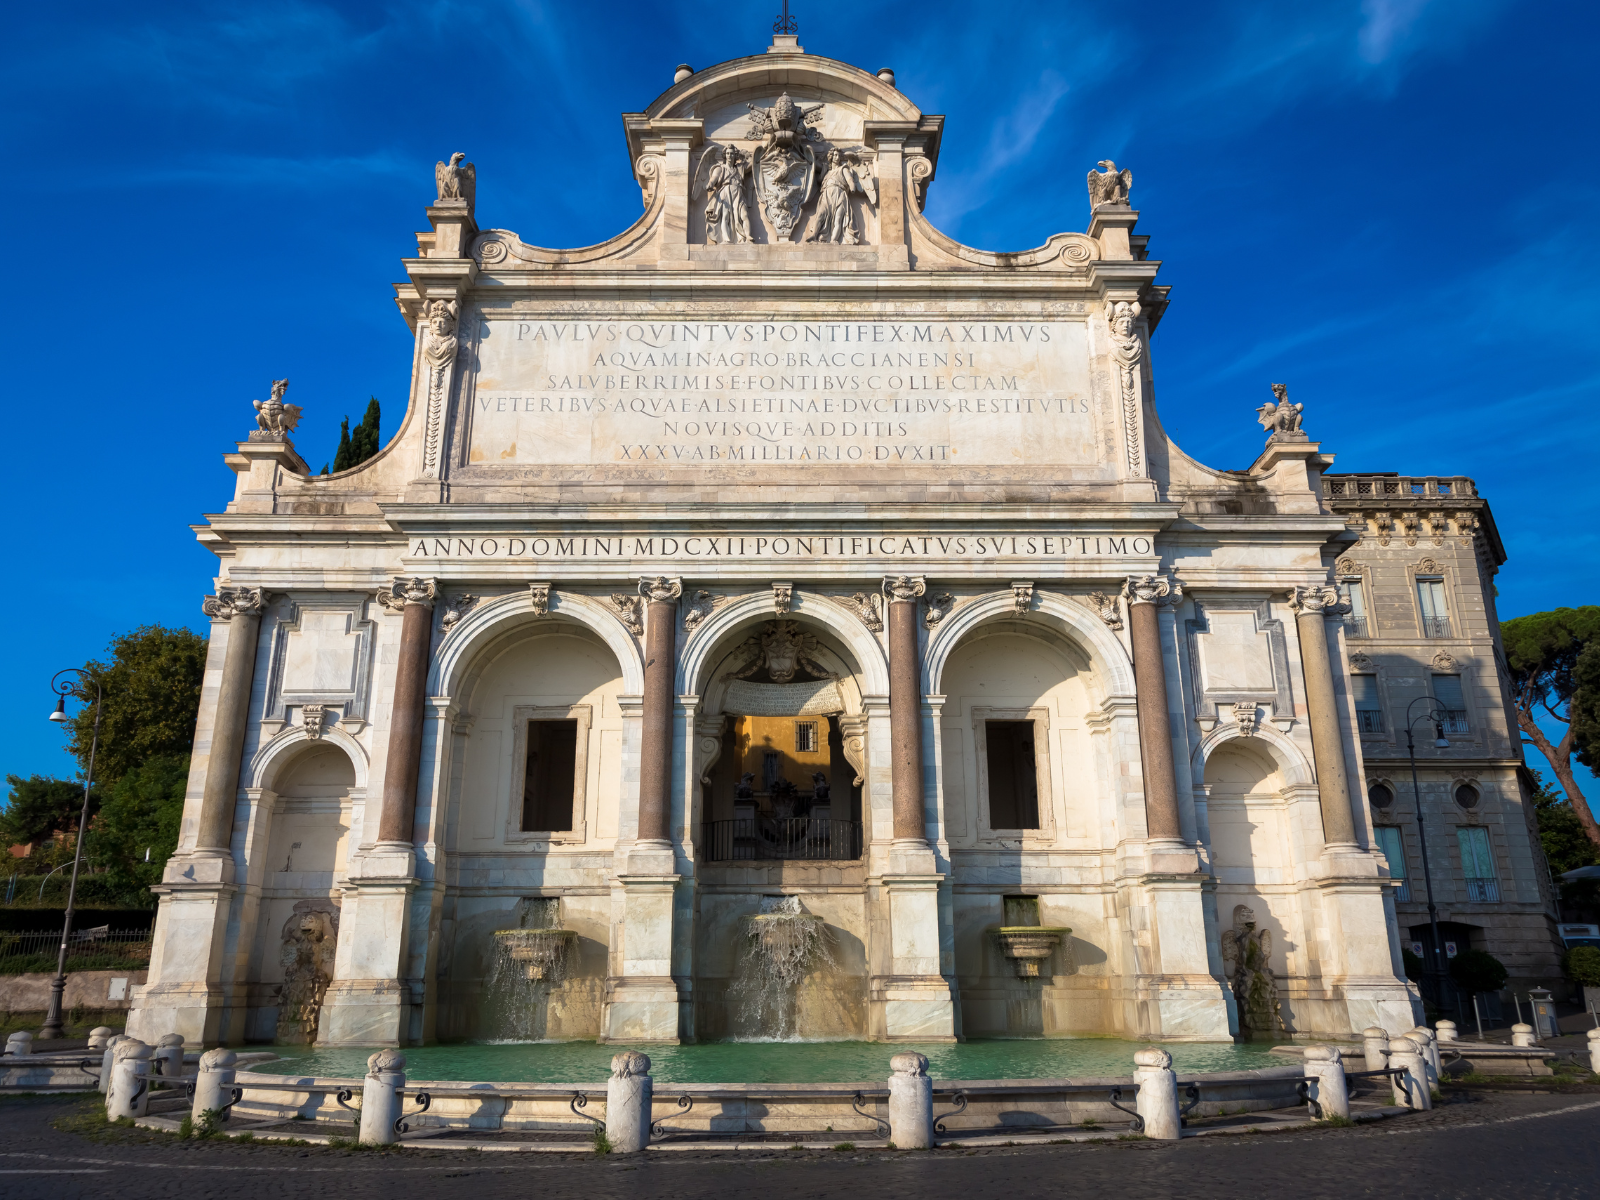 La Fontana dell'Acqua Paola est sans aucun doute l'une des plus belles fontaines de Rome.